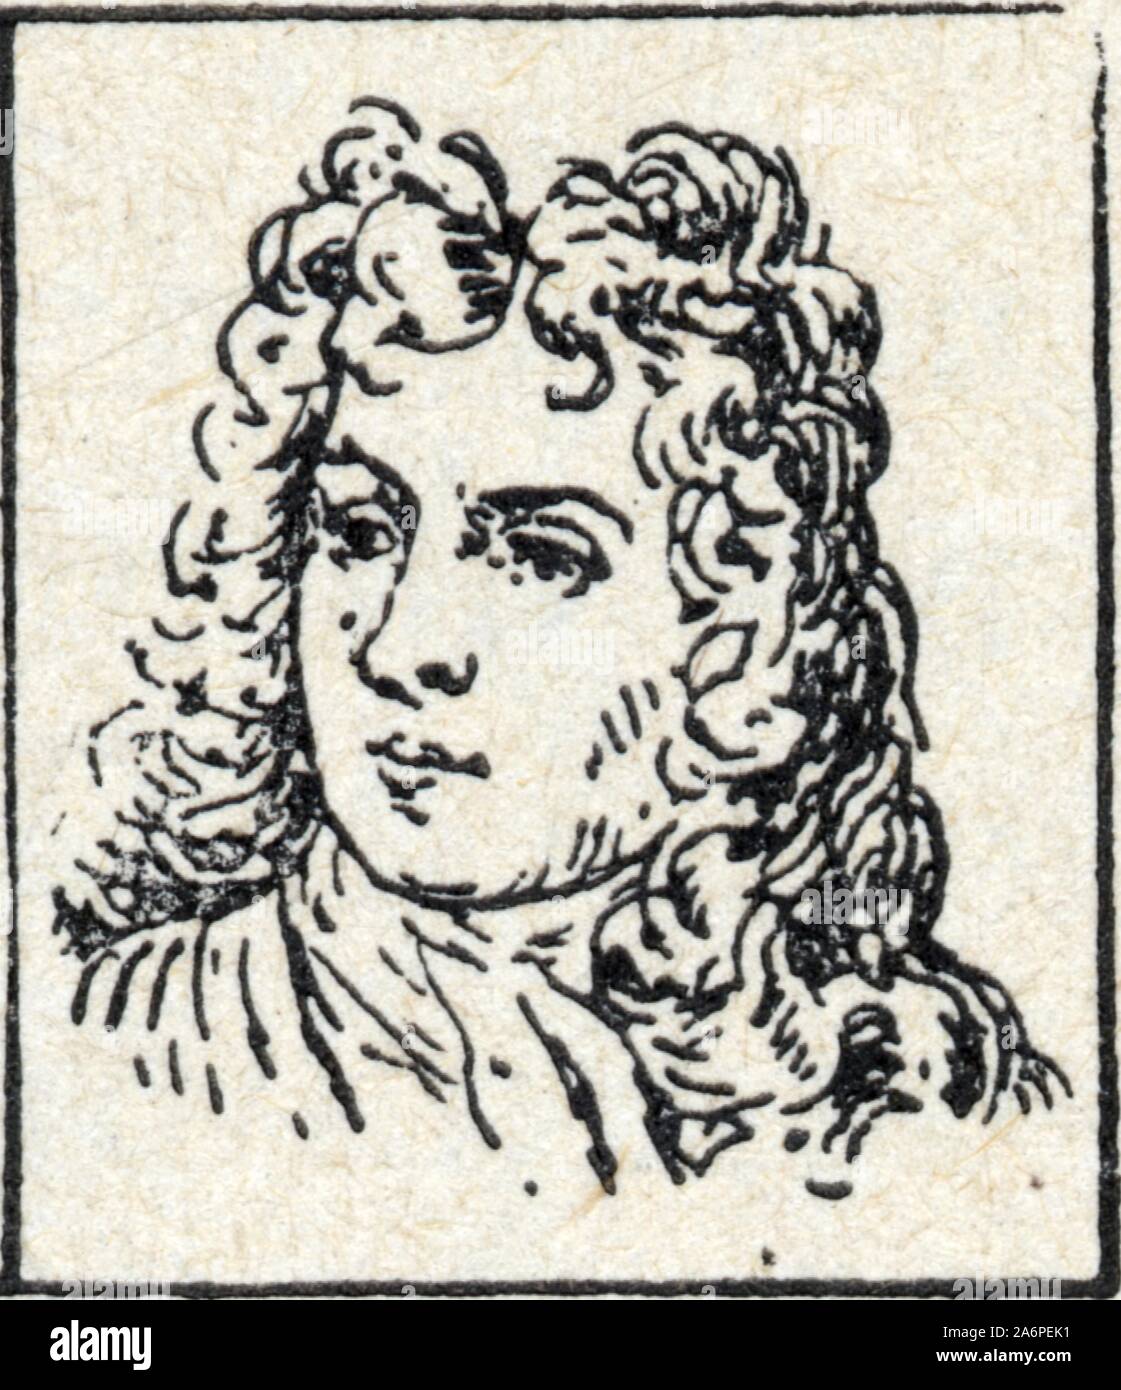 De Boufflers, Duc de Boufflers, né à Cagny le 10 janvier 1644 et mort à Fontainebleau le 22 août 1711, EST un militaire francais Stockfoto